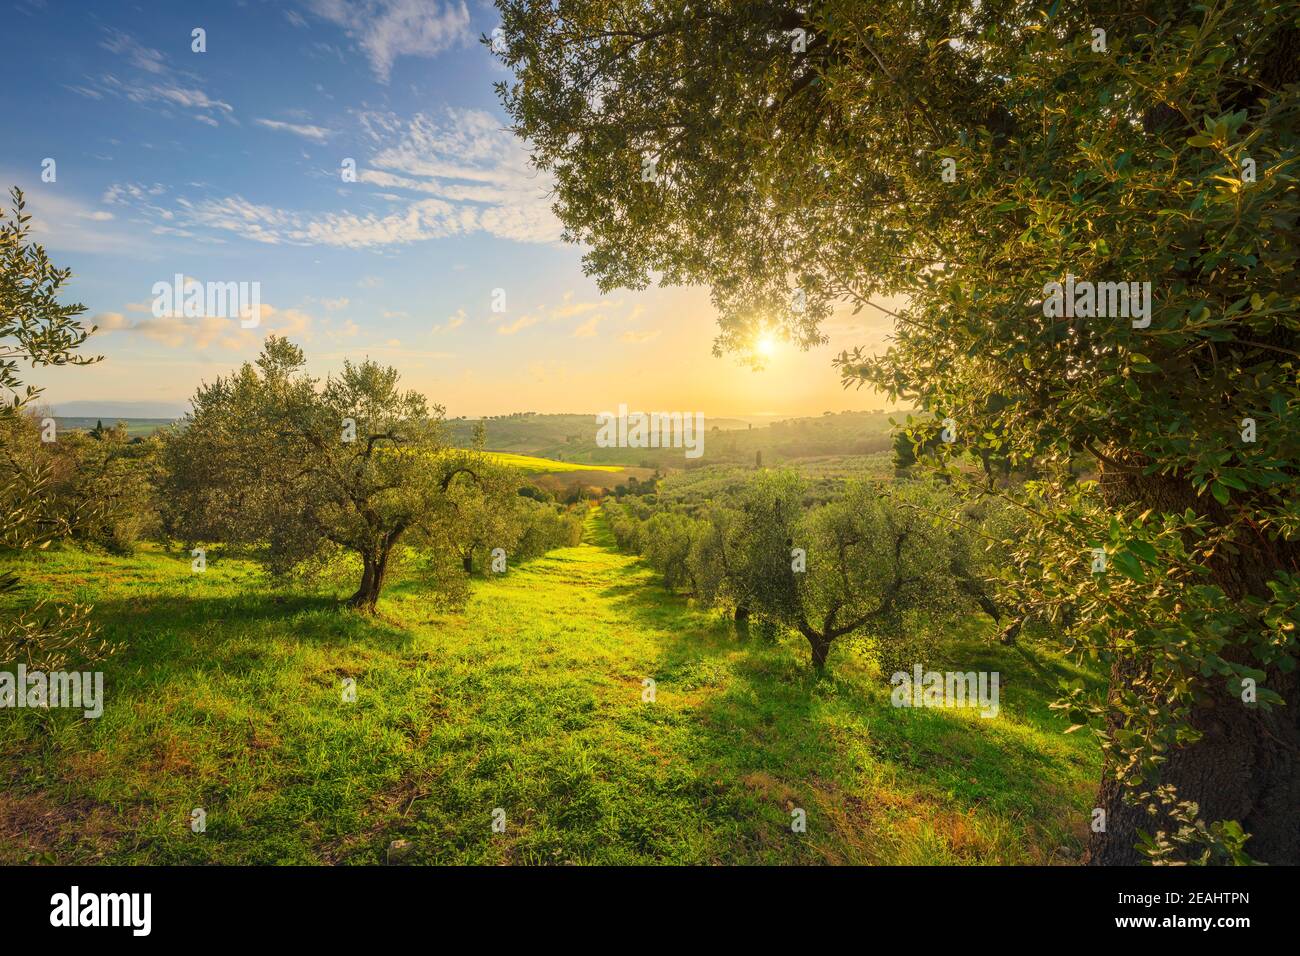 Maremma campagne vue panoramique, d'oliviers, de collines et de champs. Sur la mer l'horizon. Casale Marittimo, Pise, Toscane Italie Europe. Banque D'Images